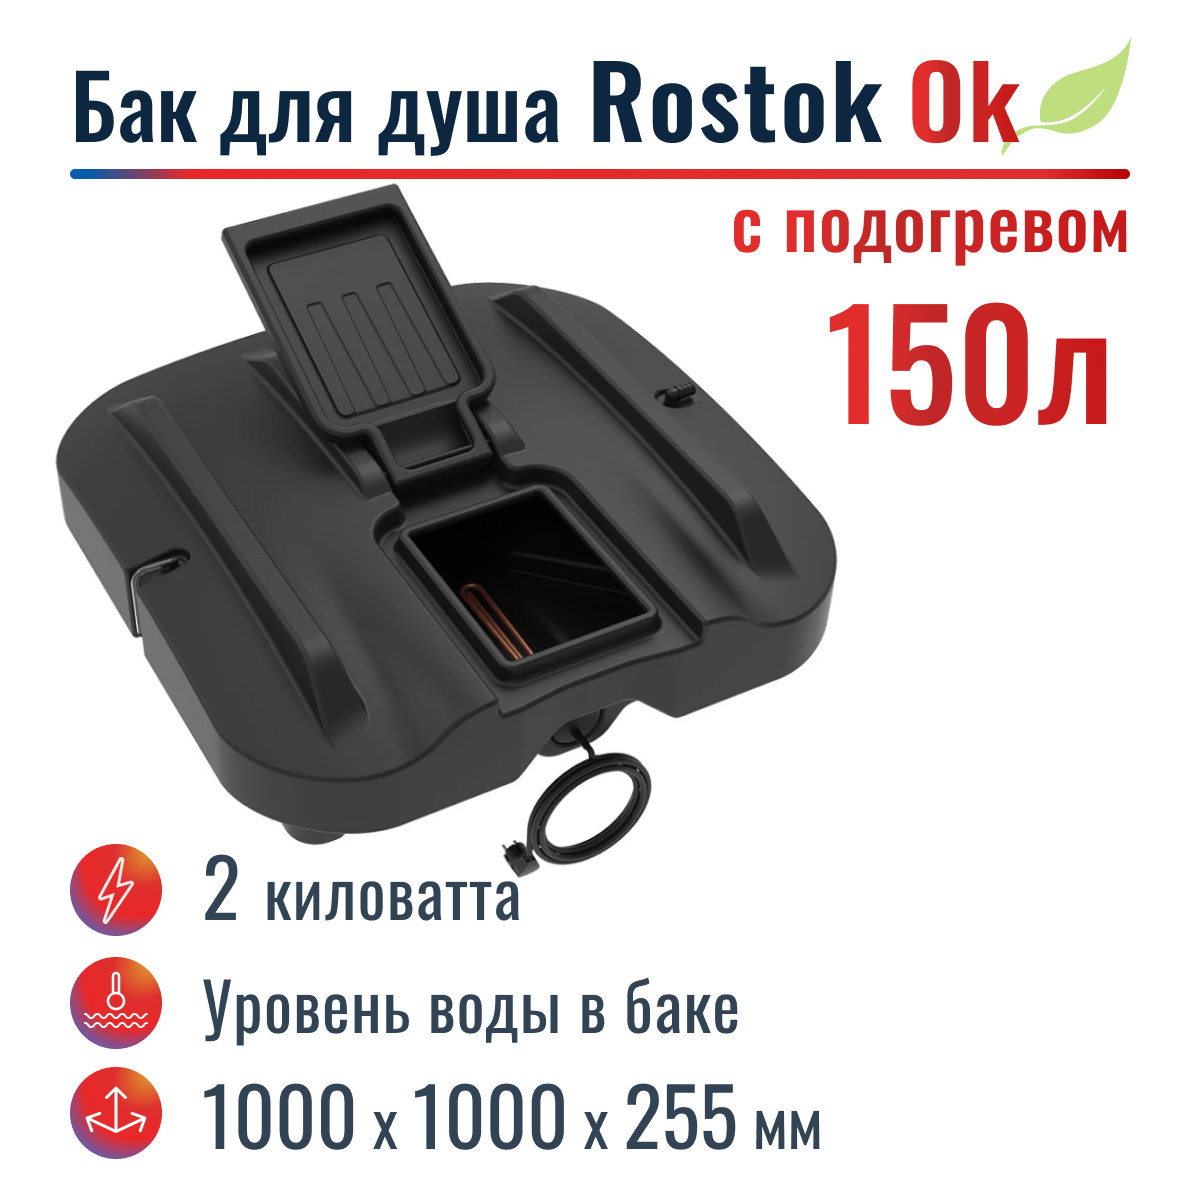 Бак для душа "Rostok" Ok 150 л, с подогревом